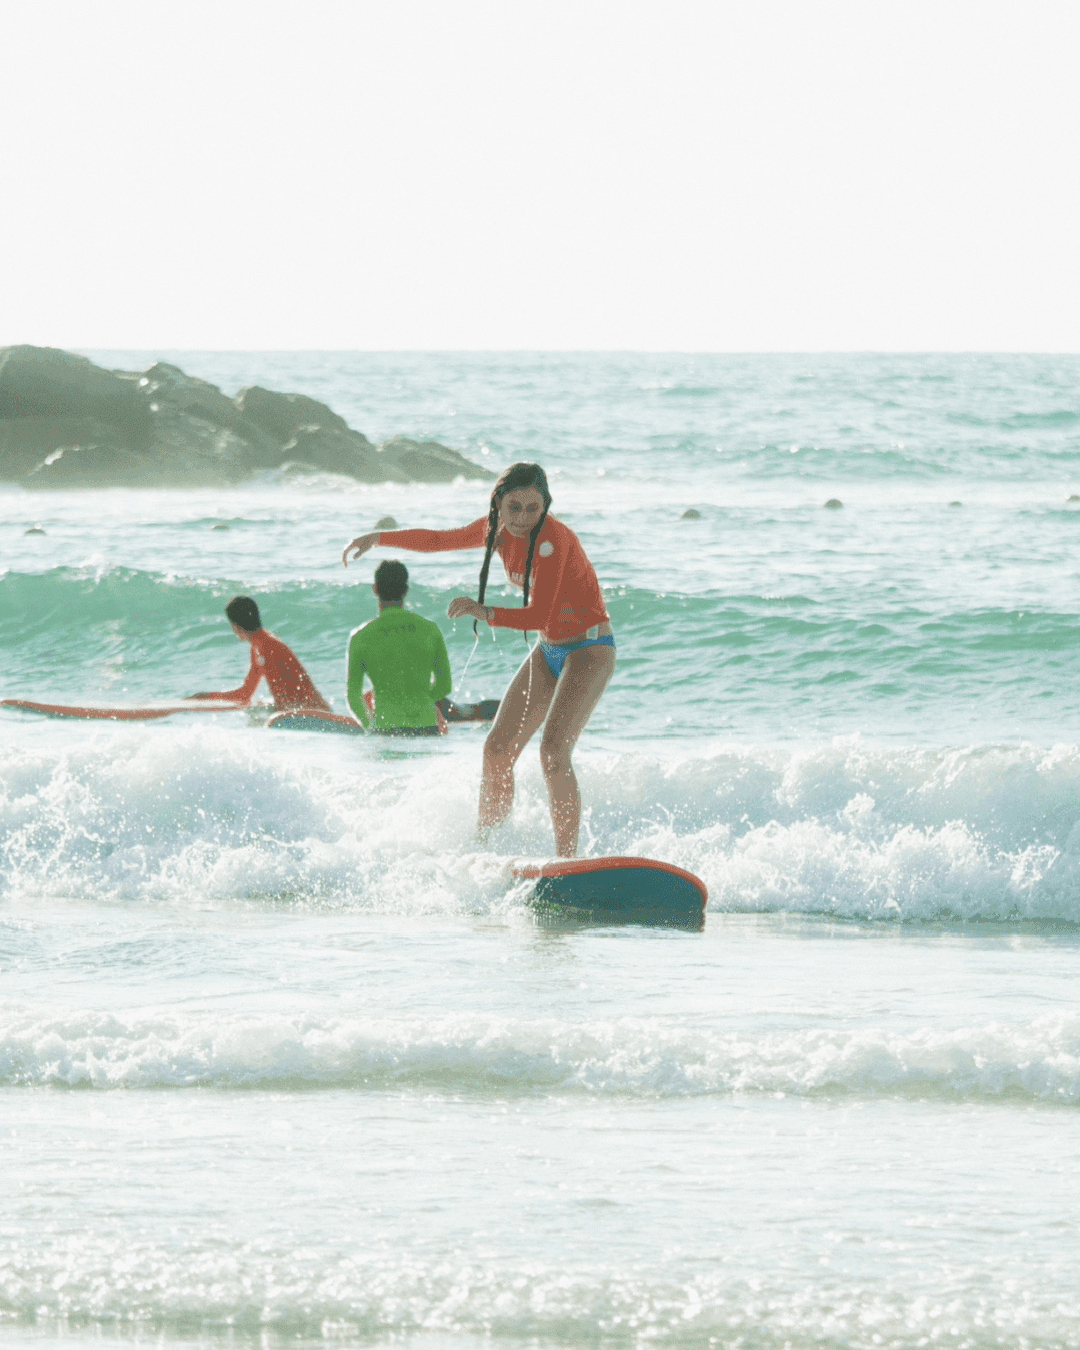 שיעור גלישה בגו מאליבו - Malibu Surfboards TLV